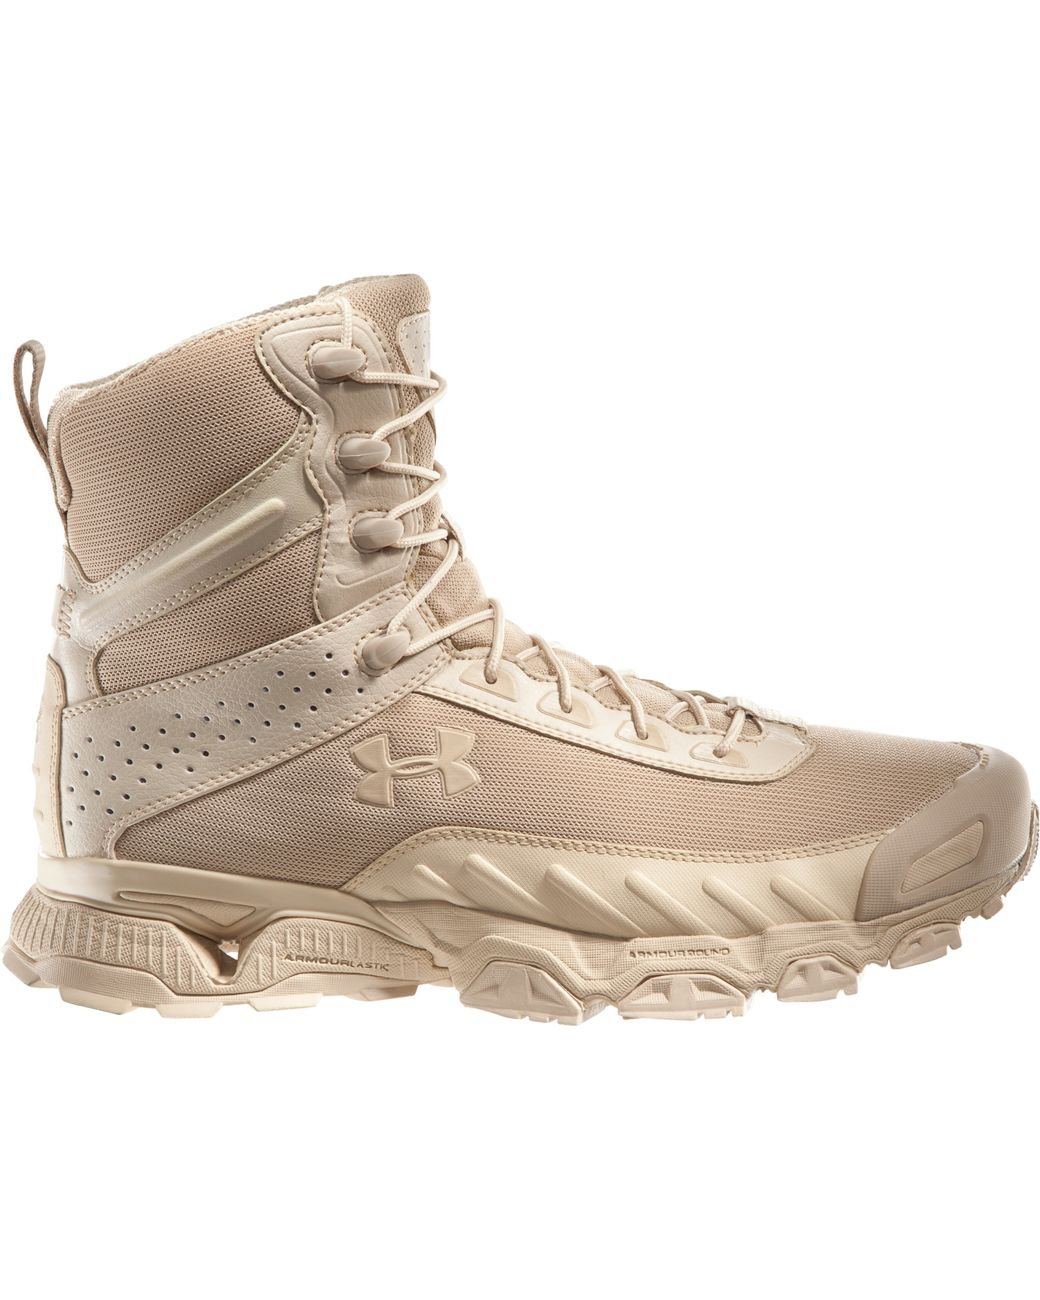 Under Armour Men's Ua Valsetz 7” Tactical Boots for Men